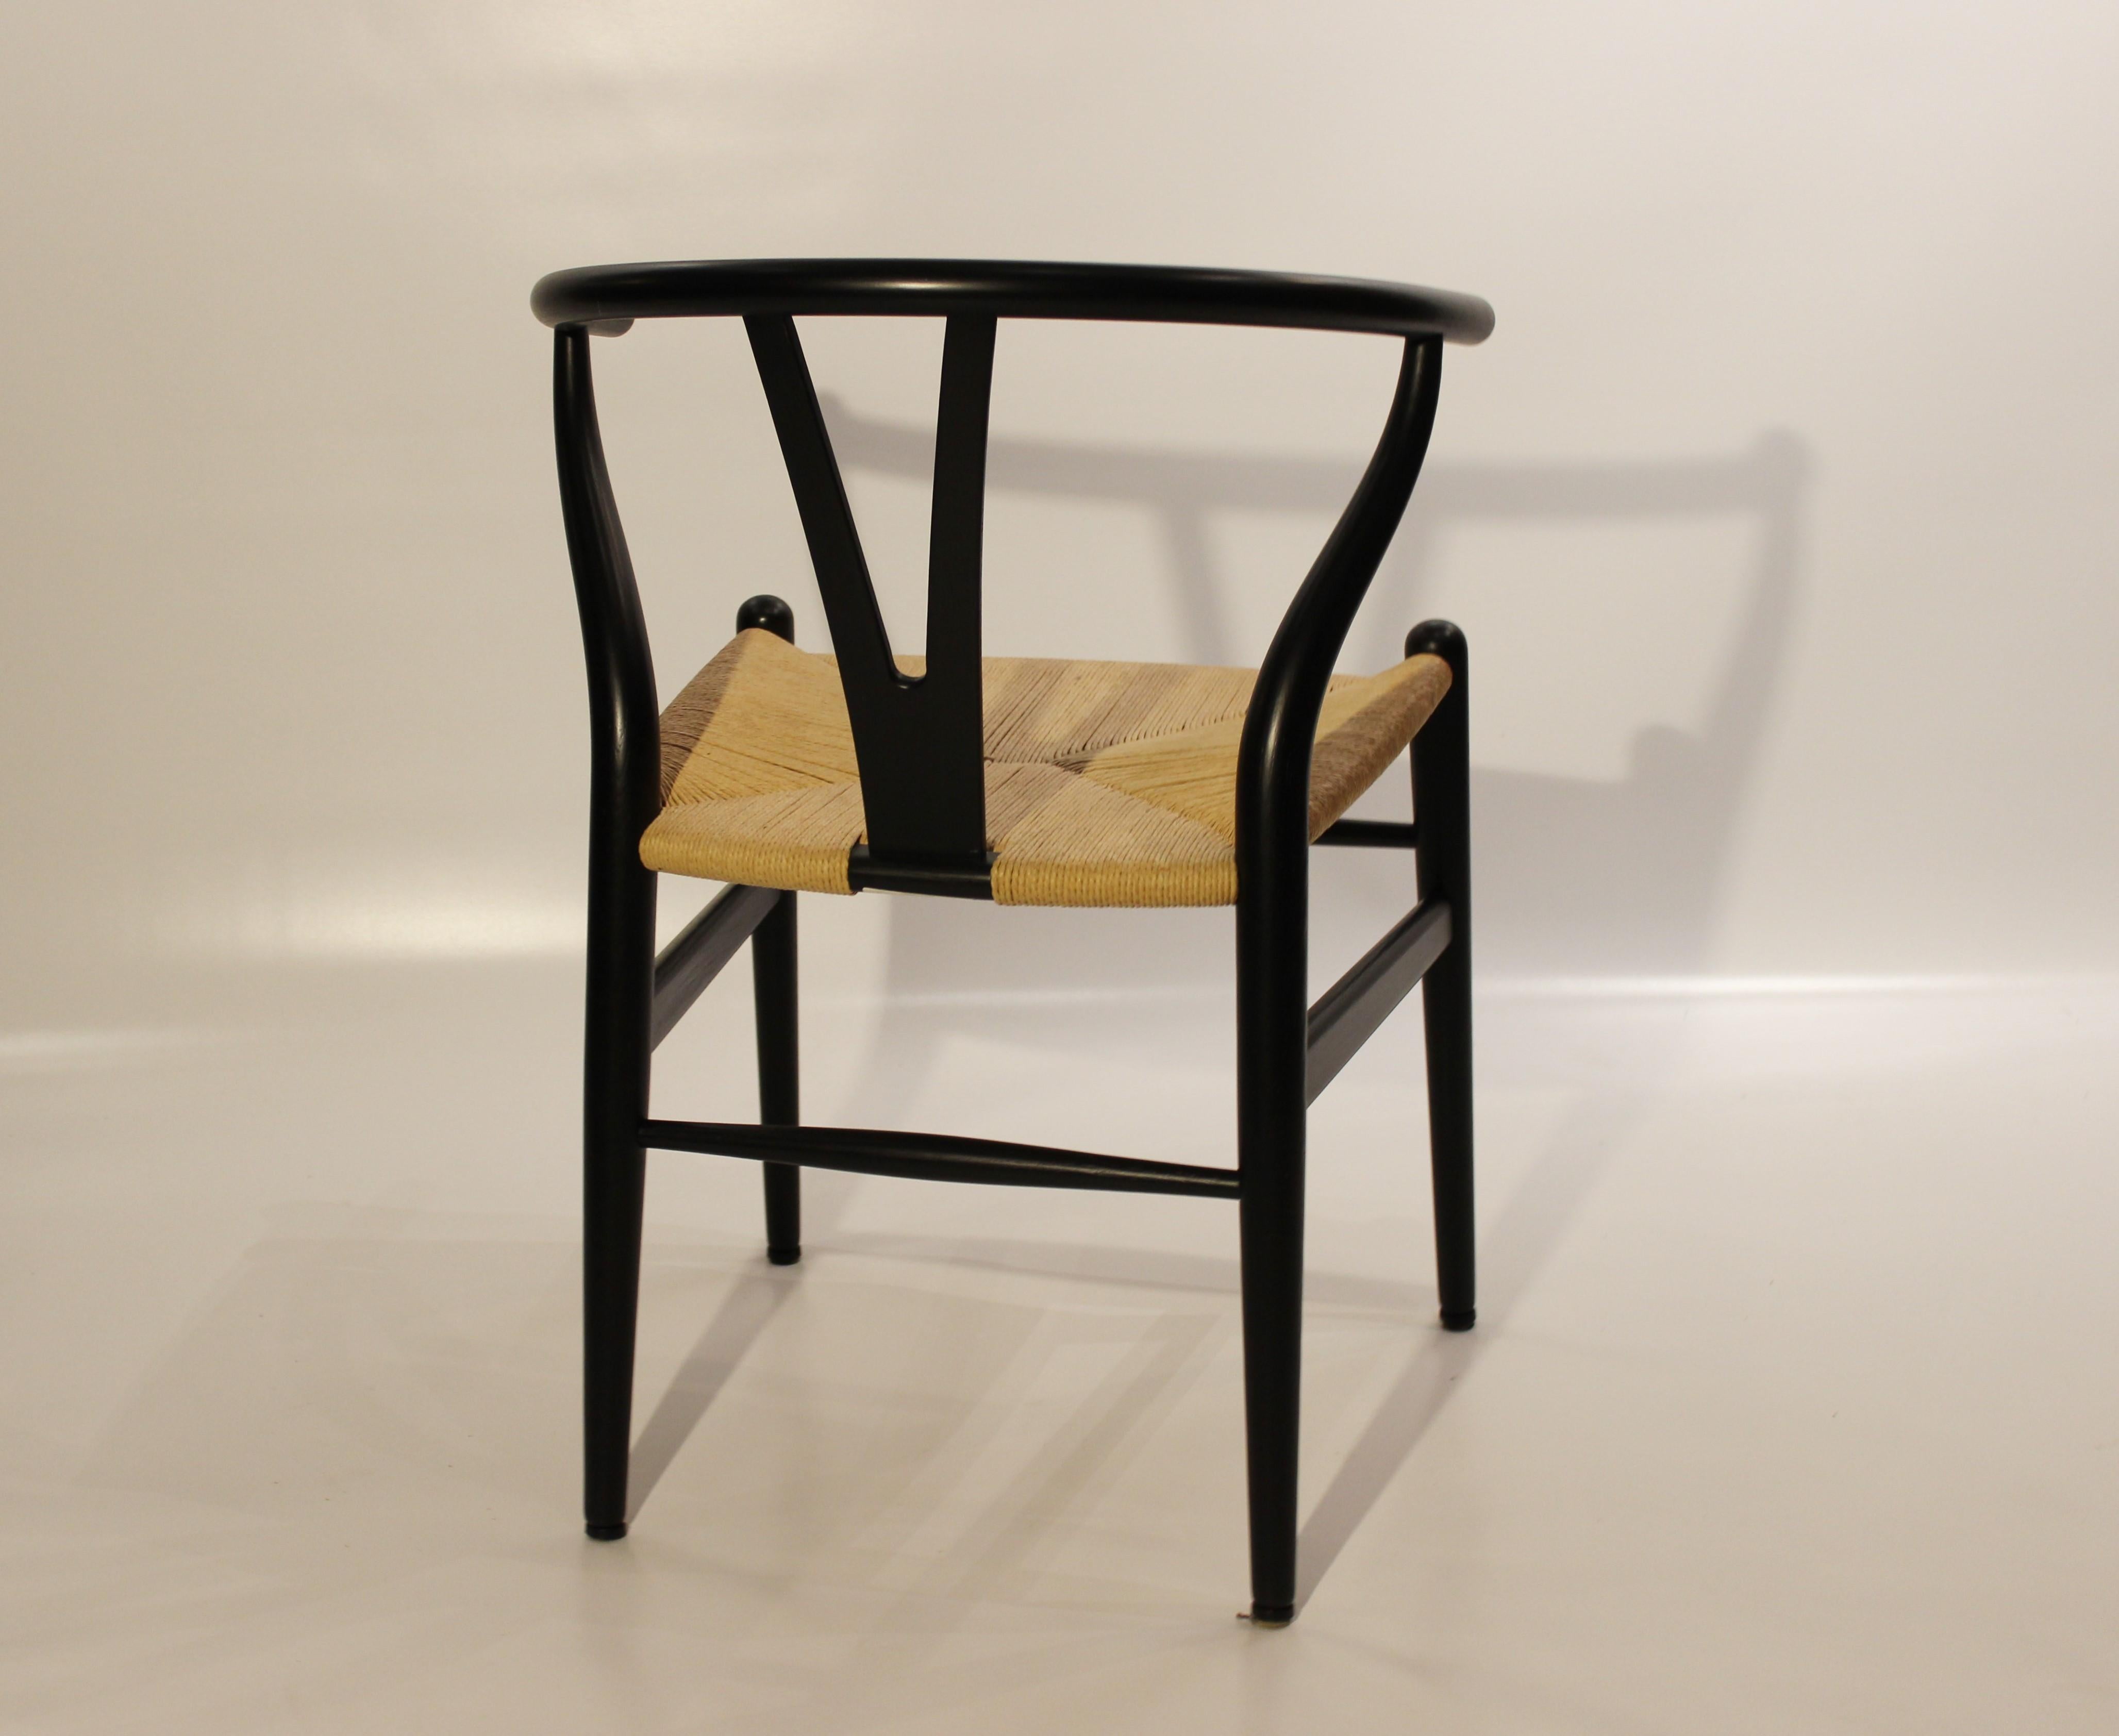 Painted Pair of Black Wishbone Chairs, Y-Chair, Model CH24, Hans J. Wegner, 2008